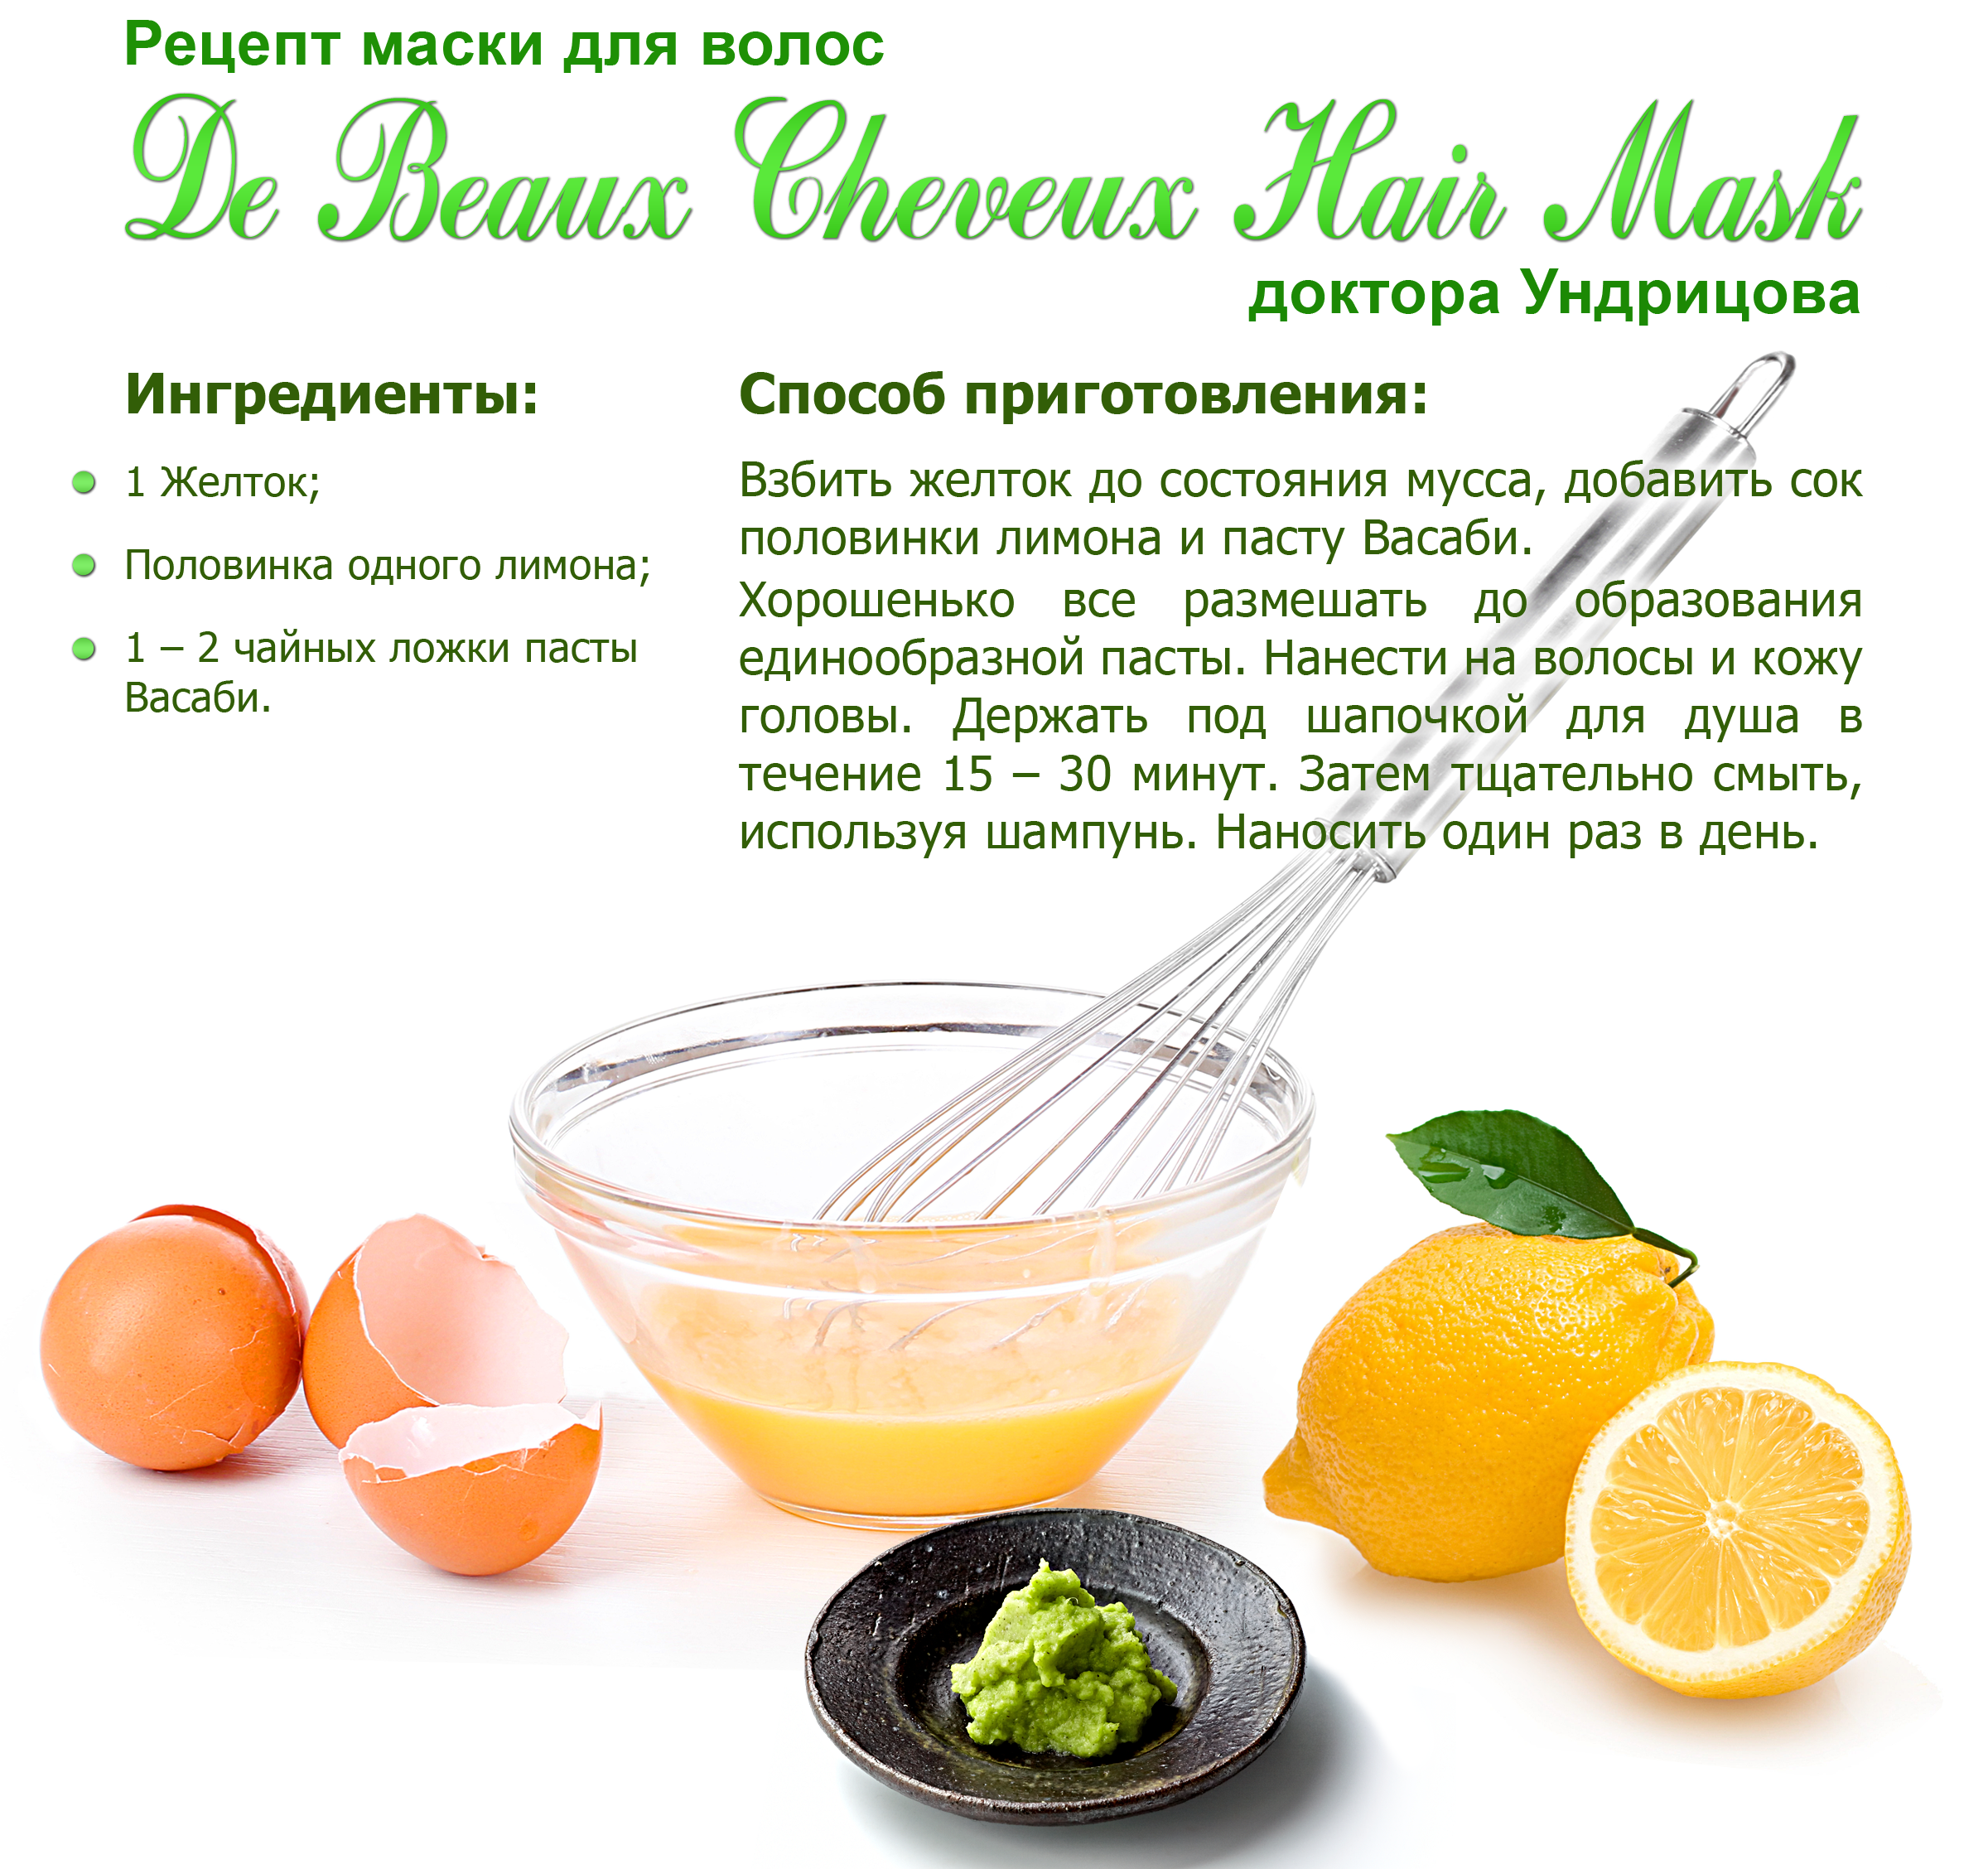 Рецепты домашних масок для волос с имбирем для роста и укрепления волос. средства для улучшения роста волос